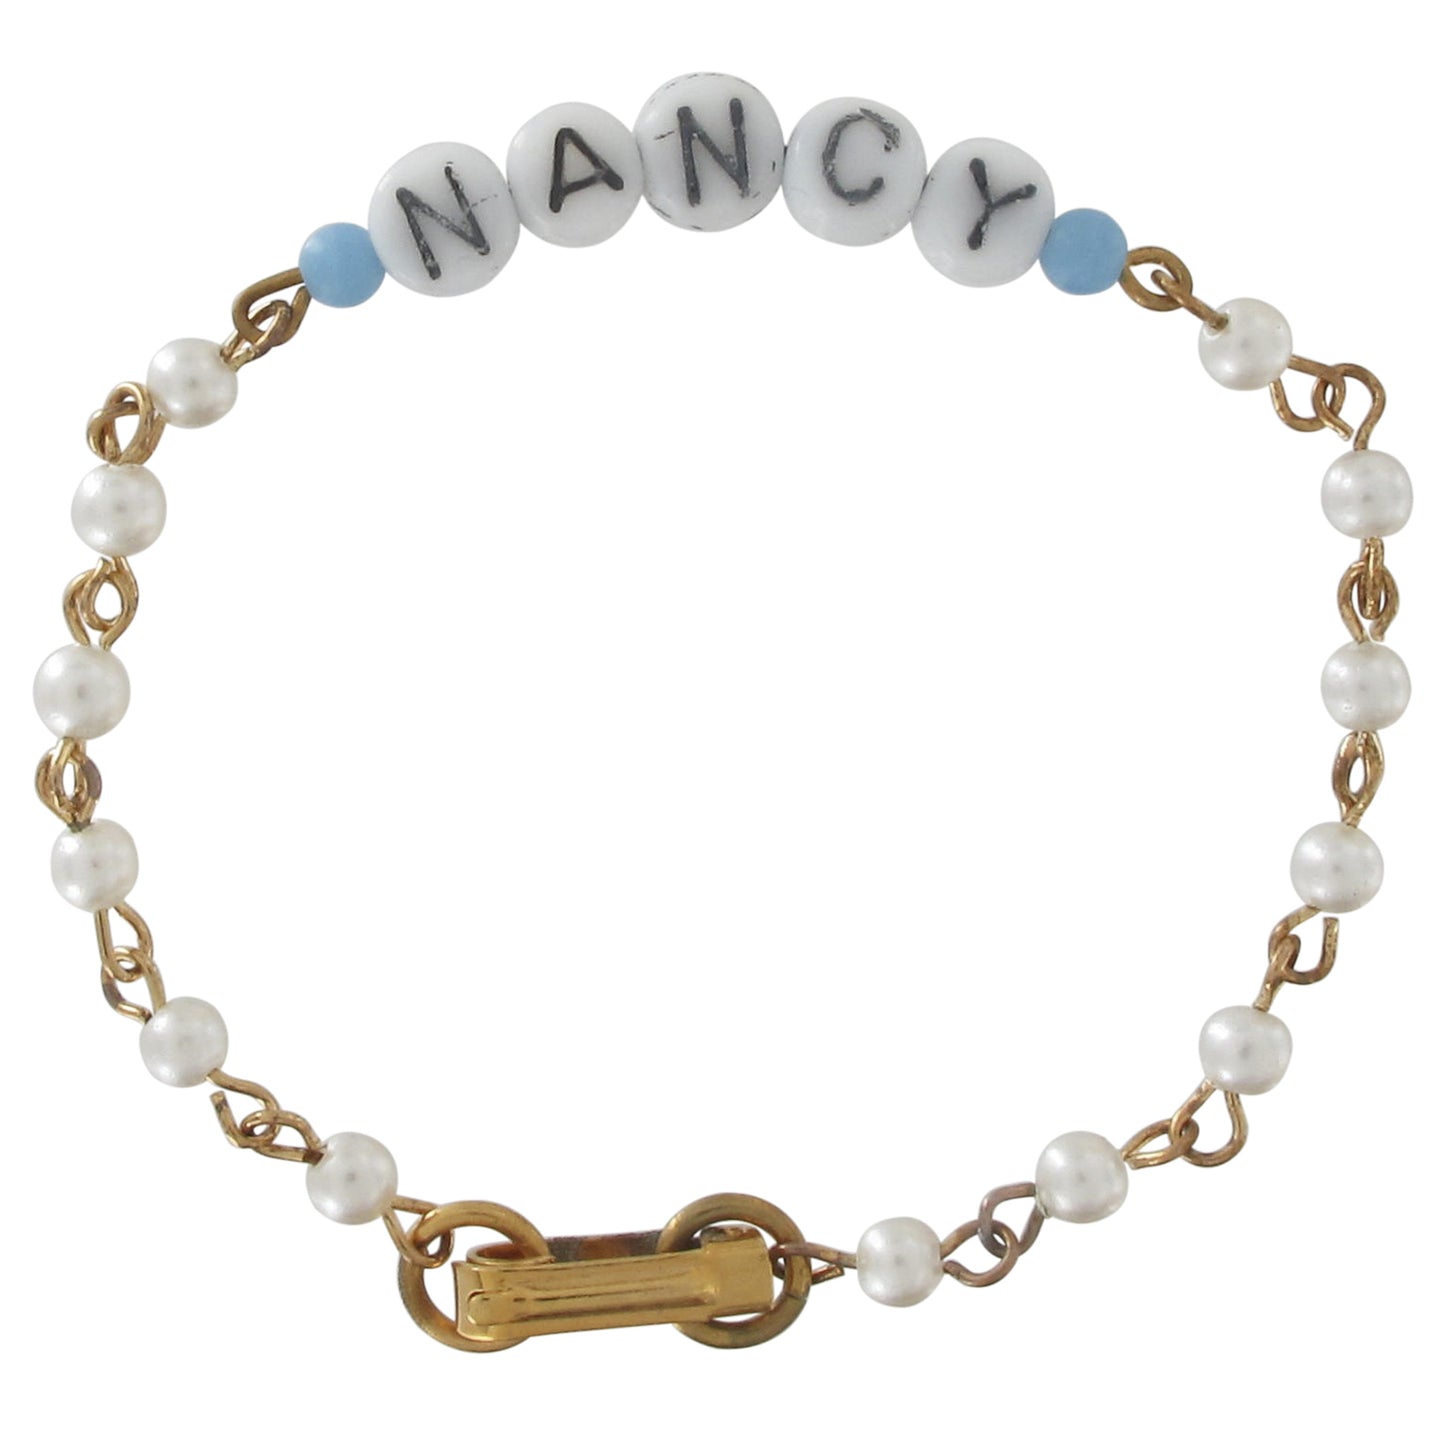 Nancy - Blue Glass Faux Pearl Name Link Bracelet - Circa 1950-60